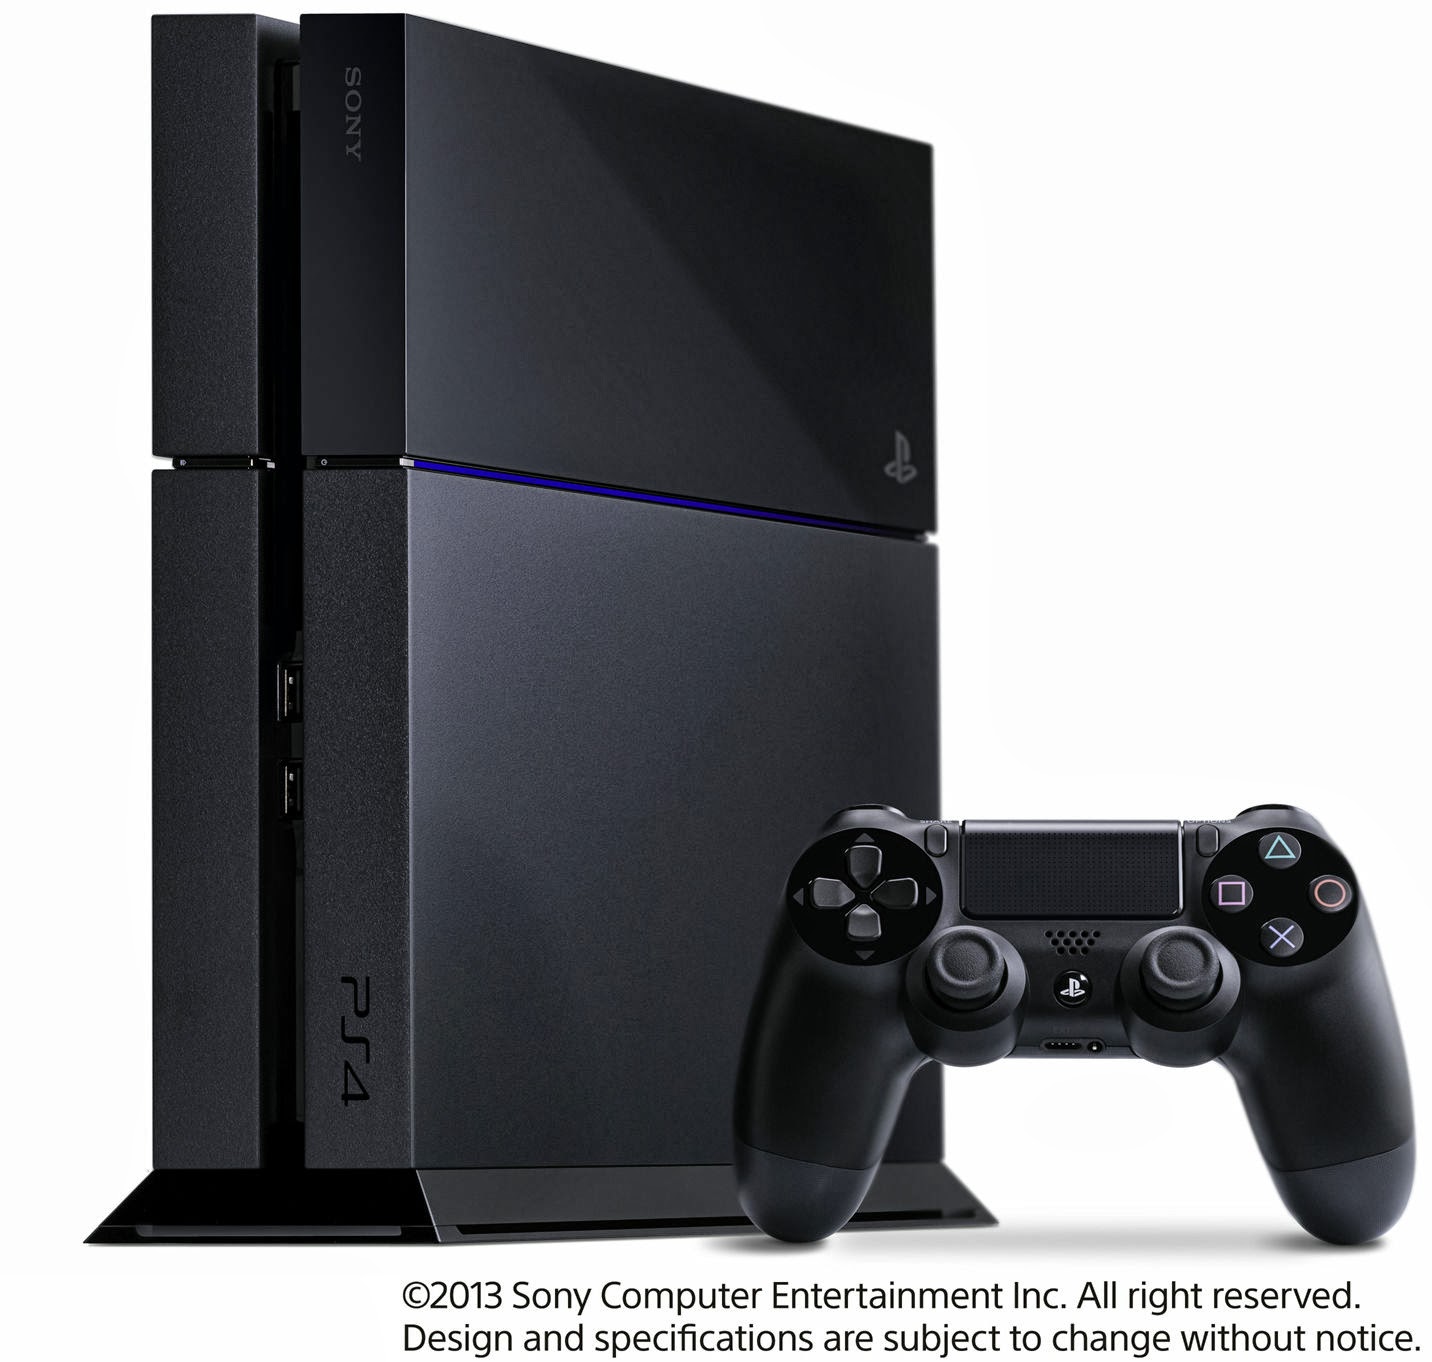 ゲームハード情報: PS4は2014年2月22日発売 価格は39,800円